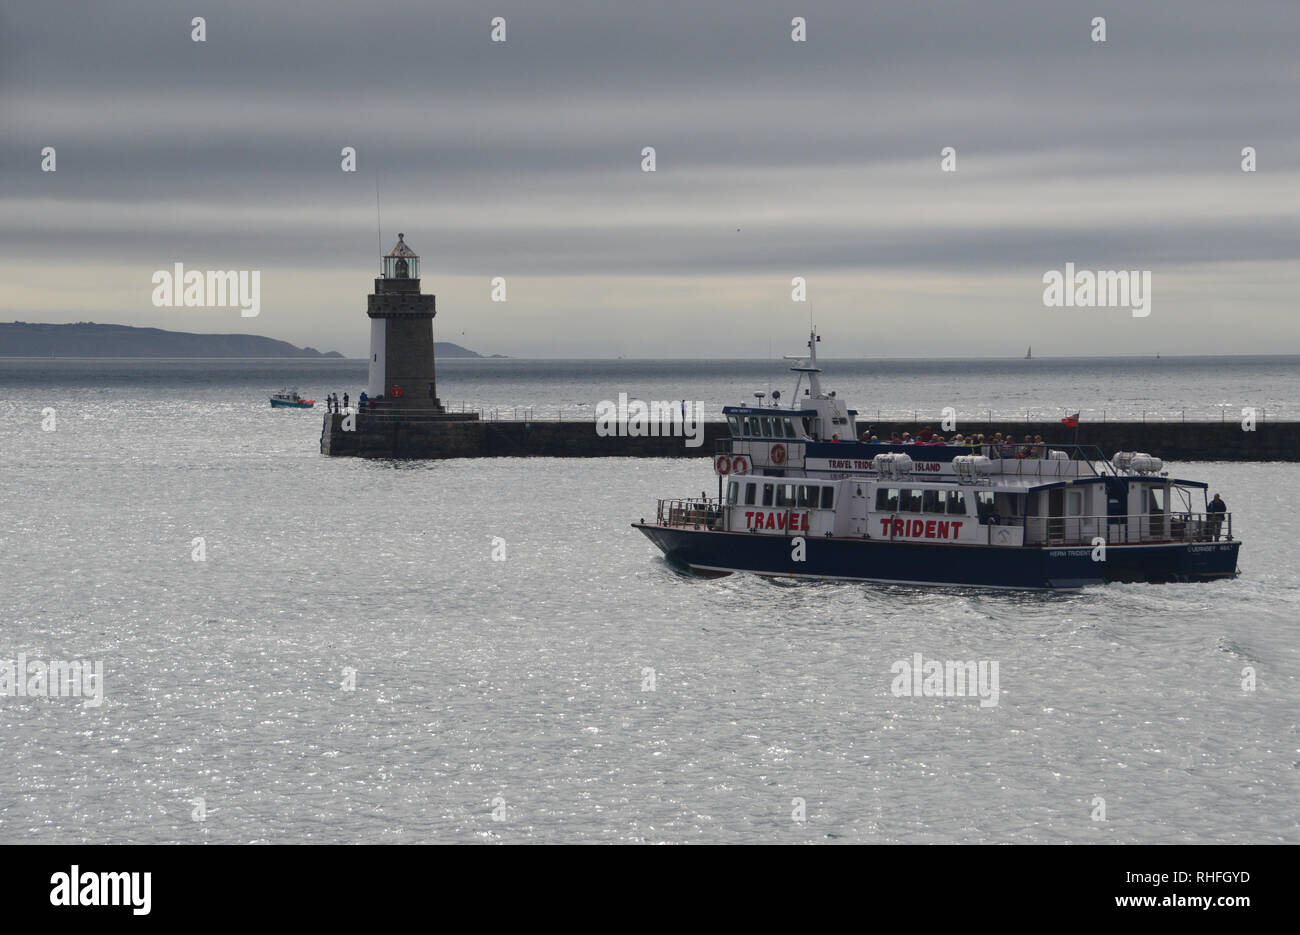 Le Trident voyages de passagers quitte St Peter Port Guernsey Harbour dans l'île de Herm, Channel Islands.UK. Banque D'Images